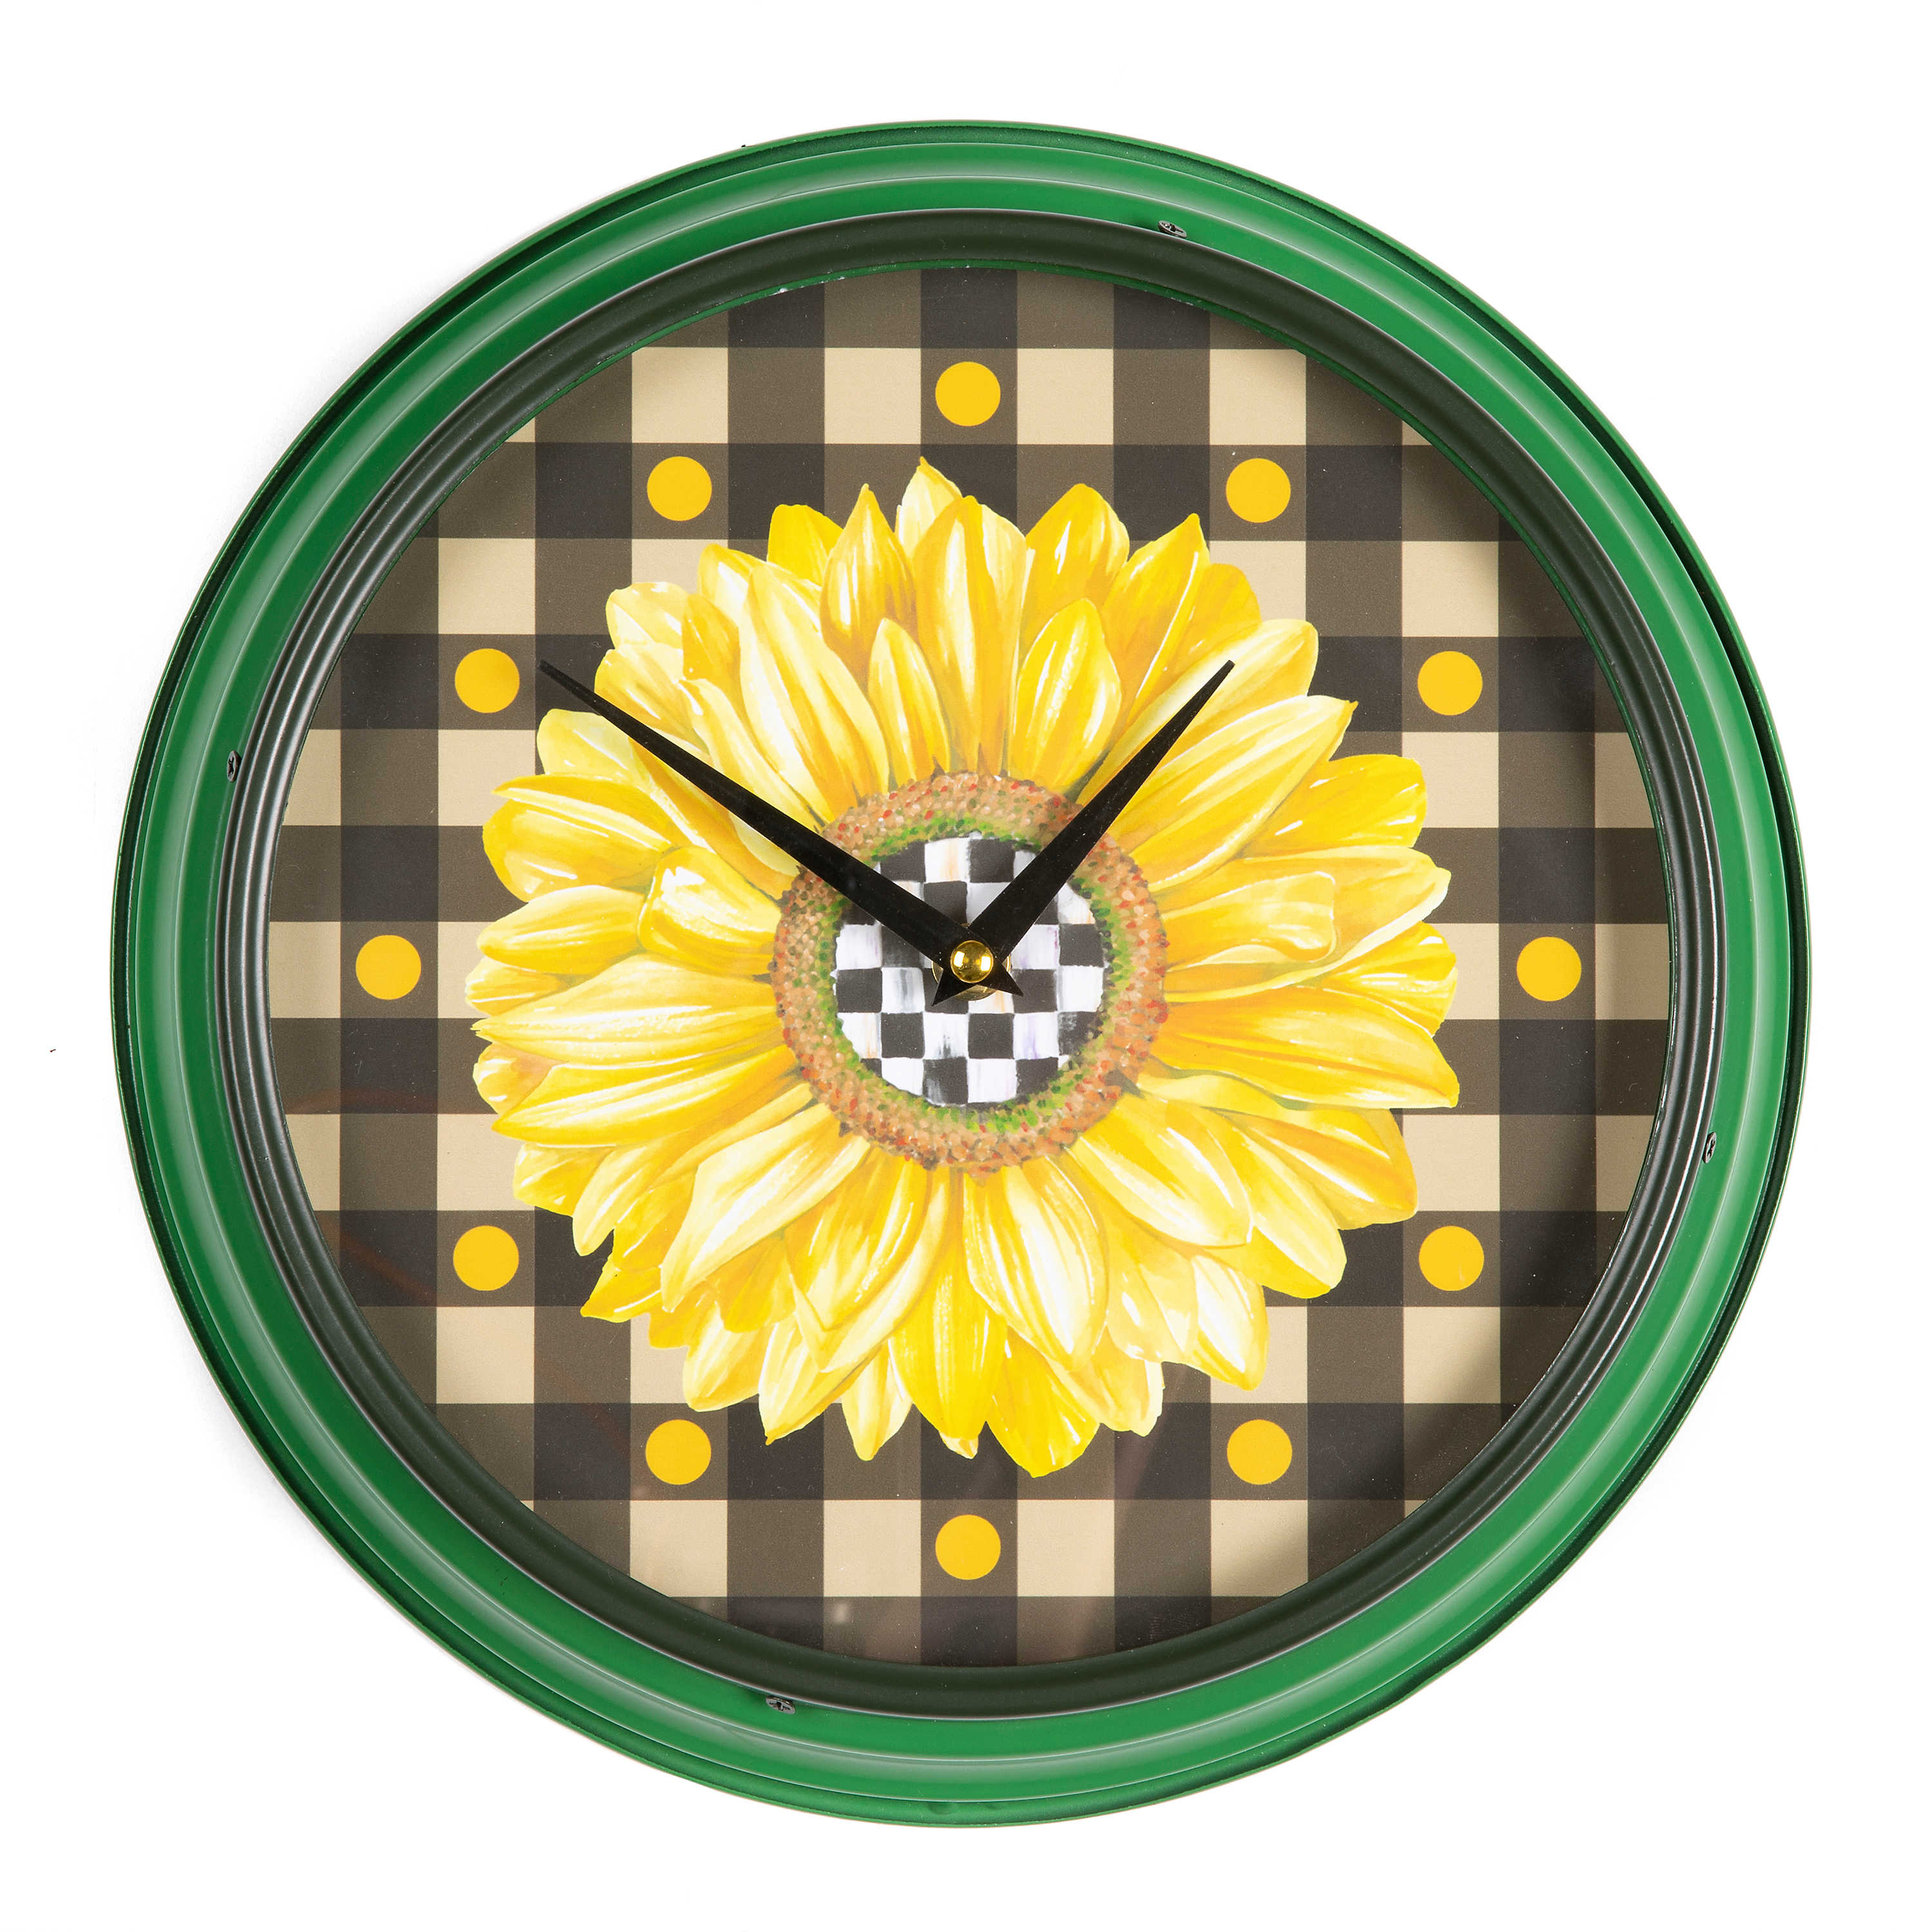 Sunflower Wall Clock mackenzie-childs Panama 1